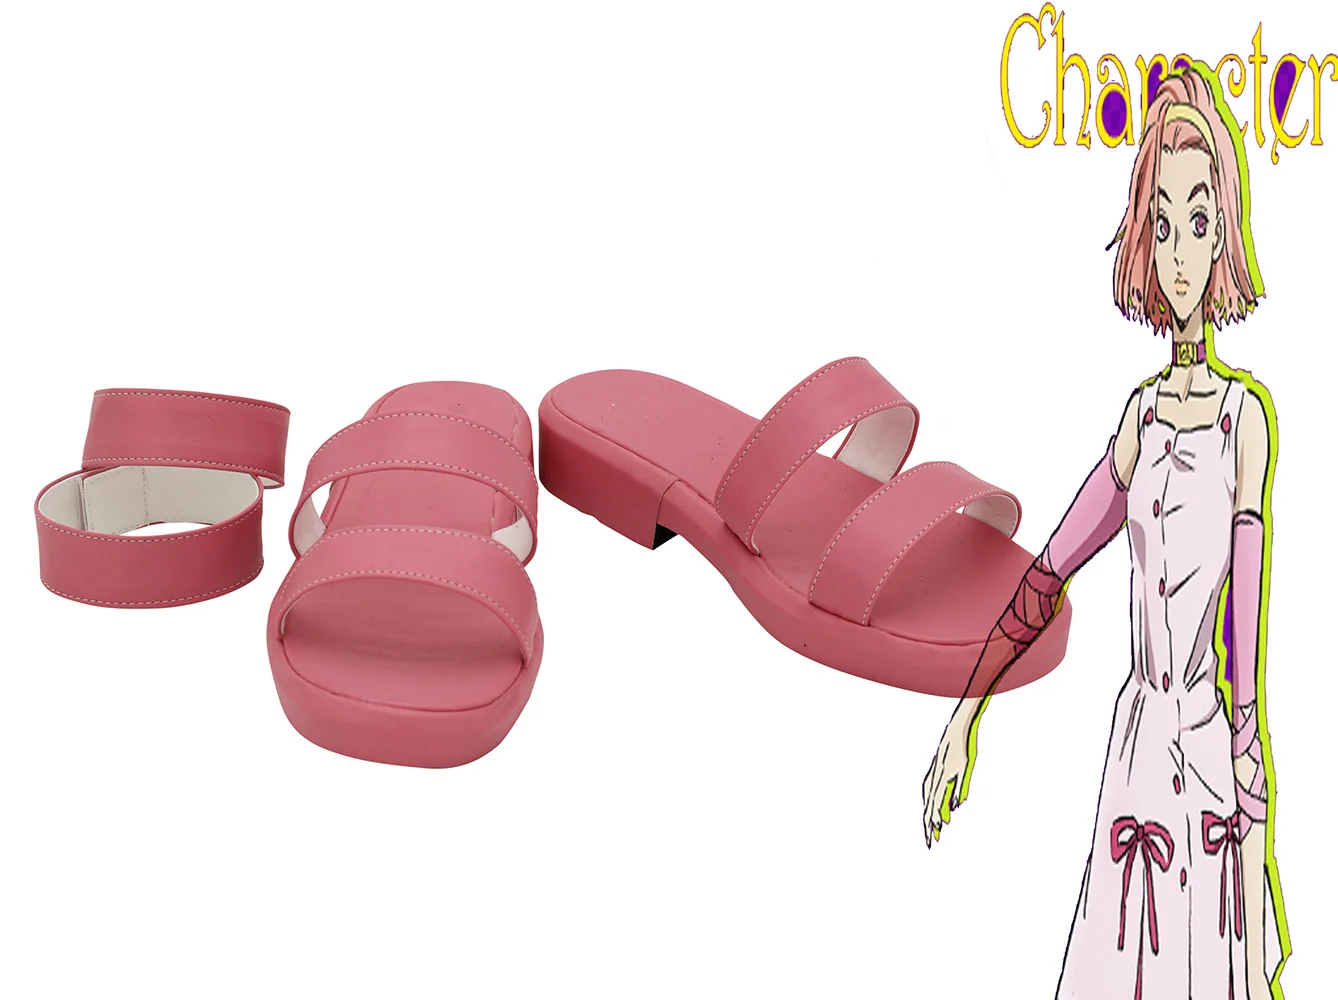 JoJo's Bizarre Adventure Обувь для косплея Сугимото Рейми, розовые босоножки на заказ, любой размер